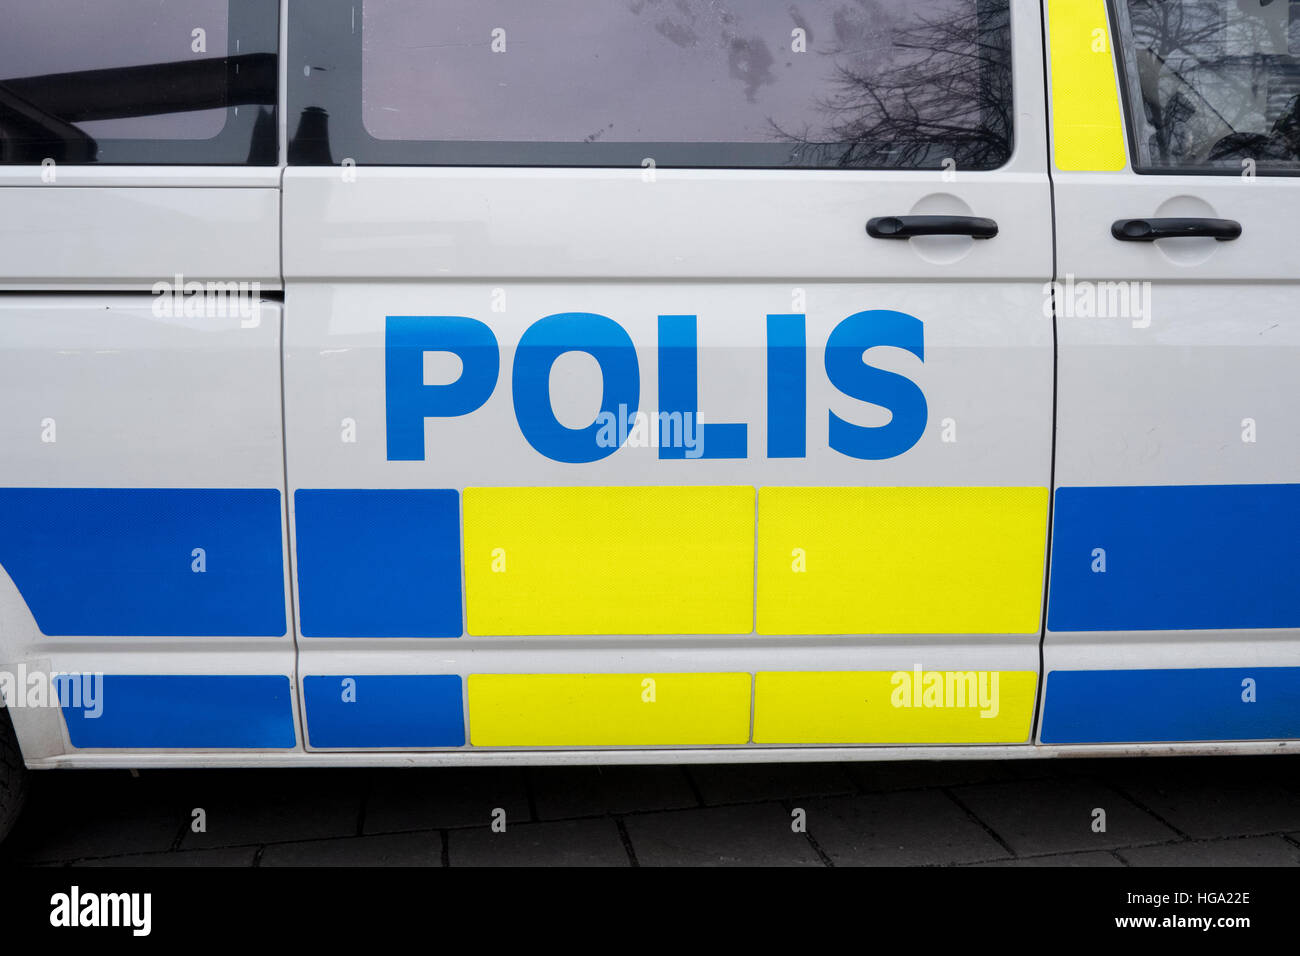 Schwedische Polizei-Auto. Stockfoto